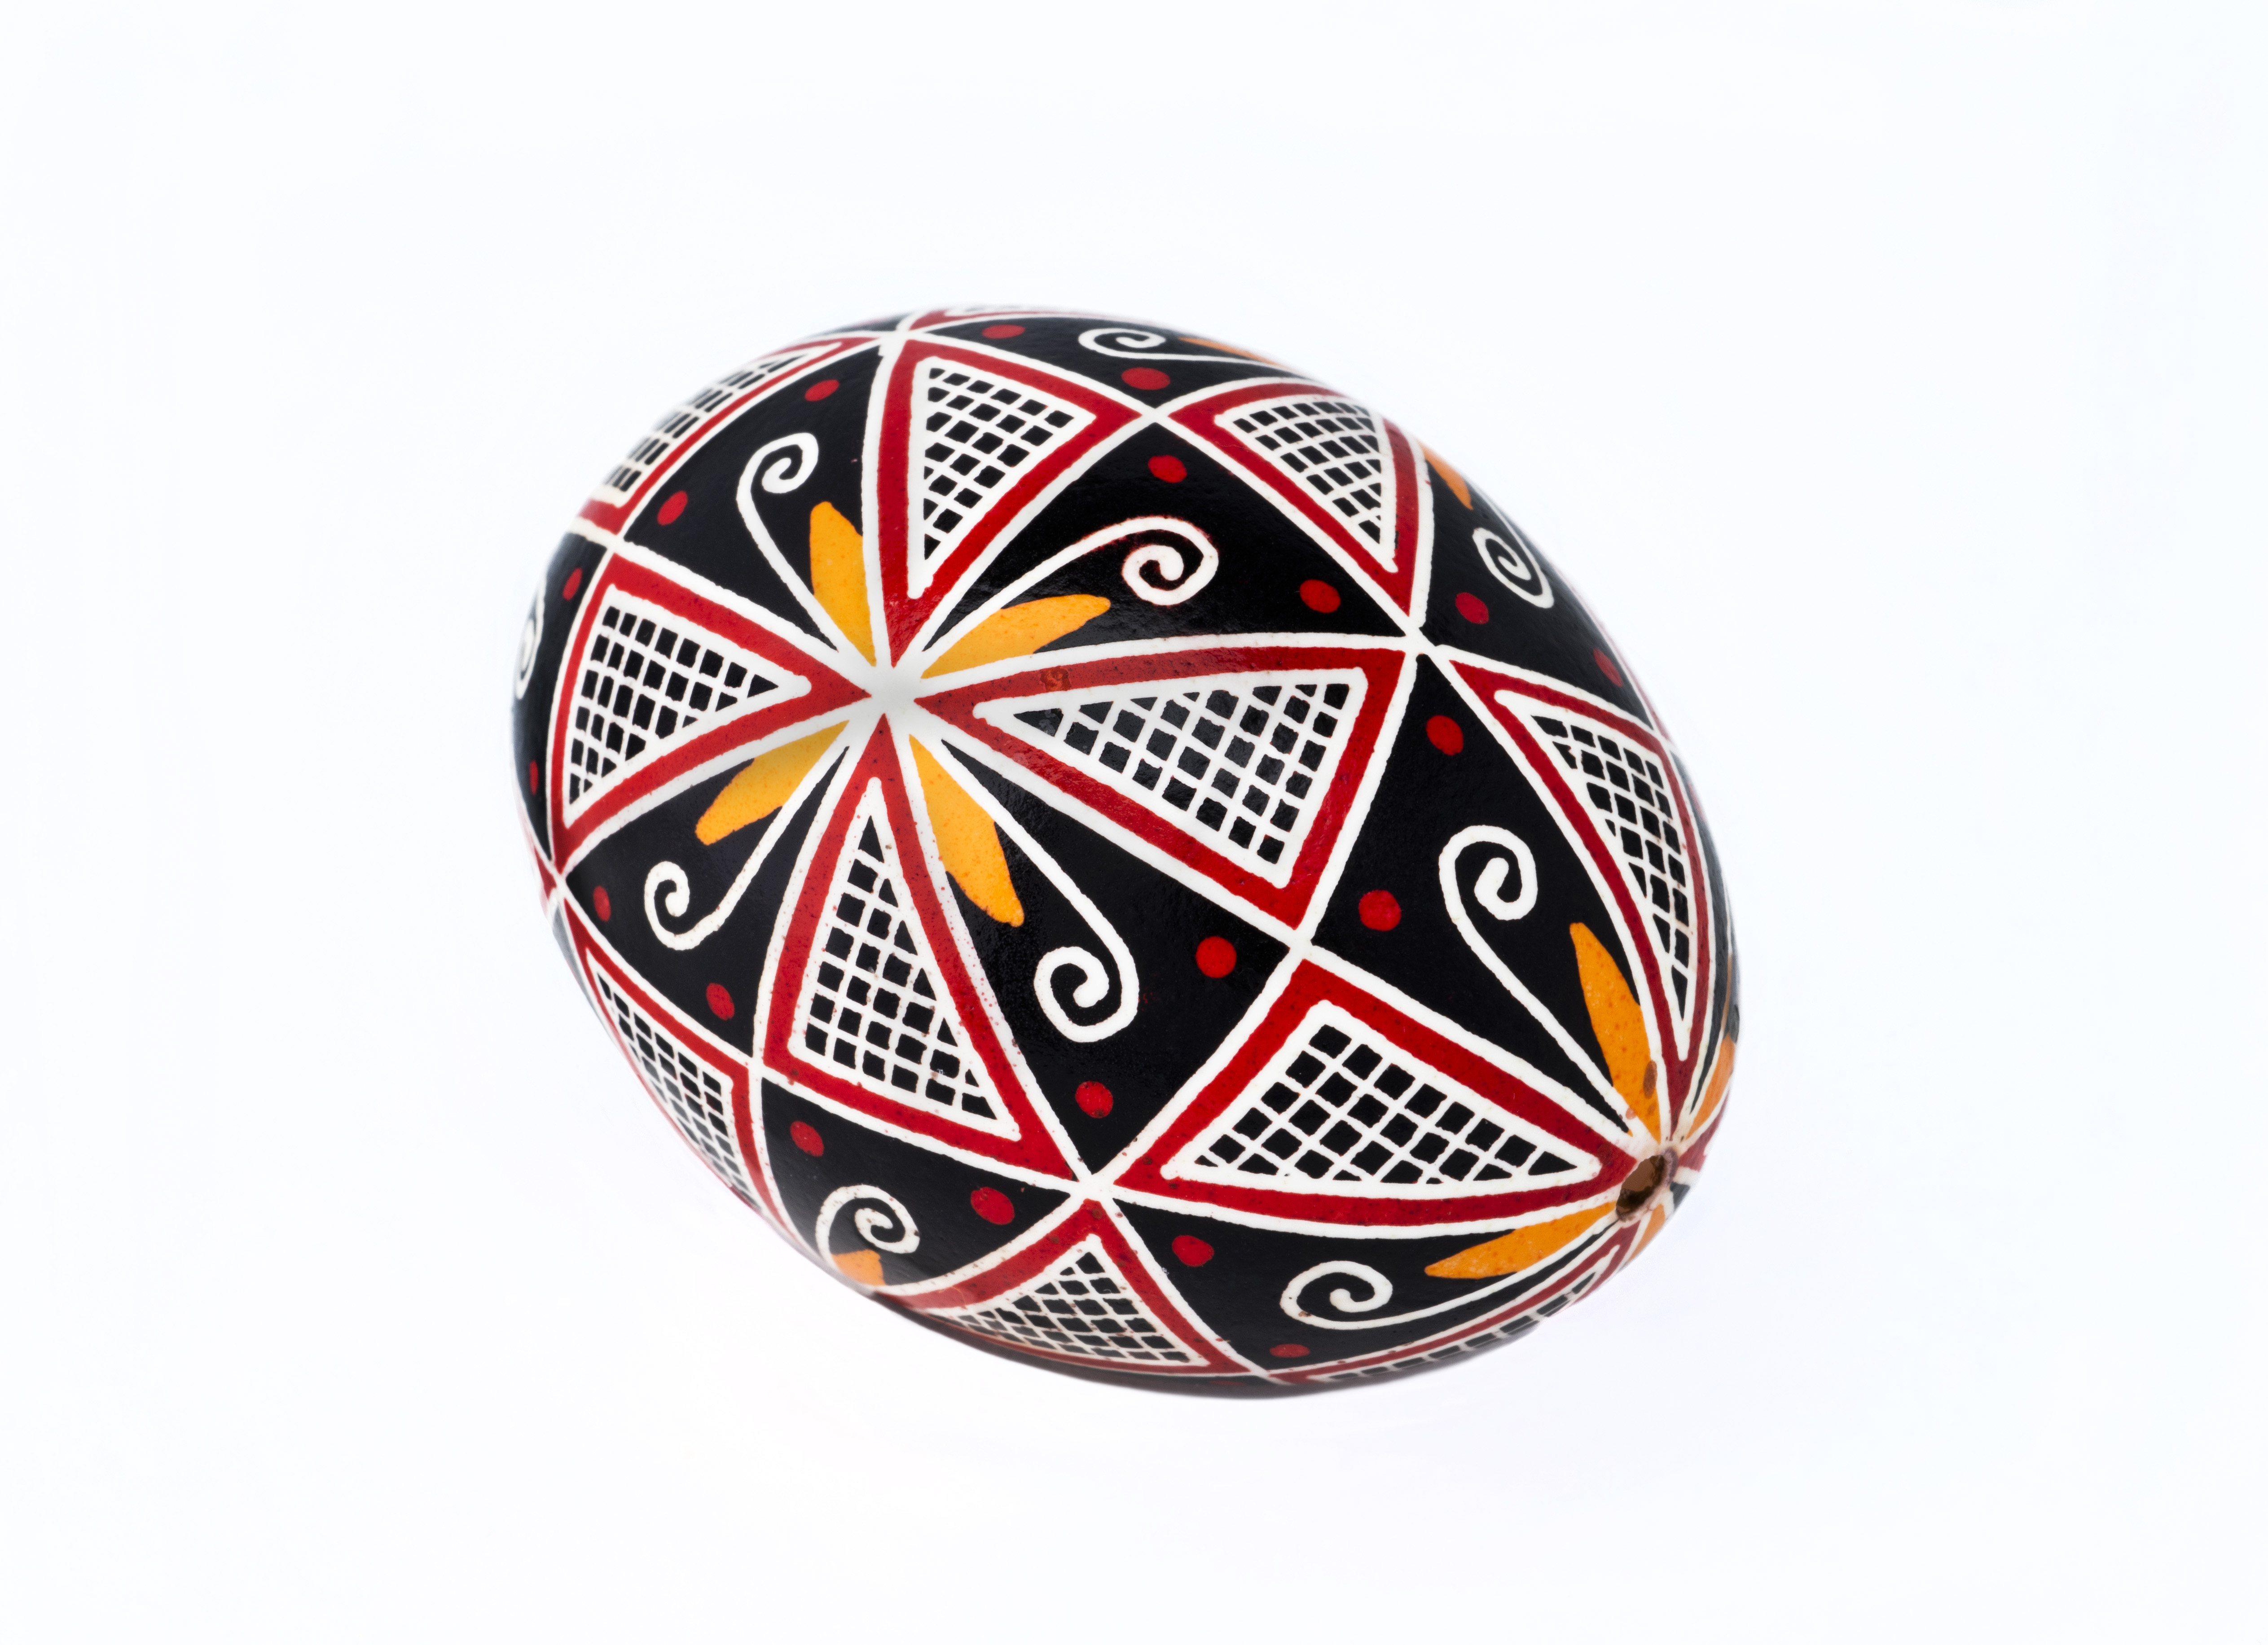 Œuf avec des motifs géométriques rouges, jaunes et noirs//Egg with red, yellow and black geometric patterns